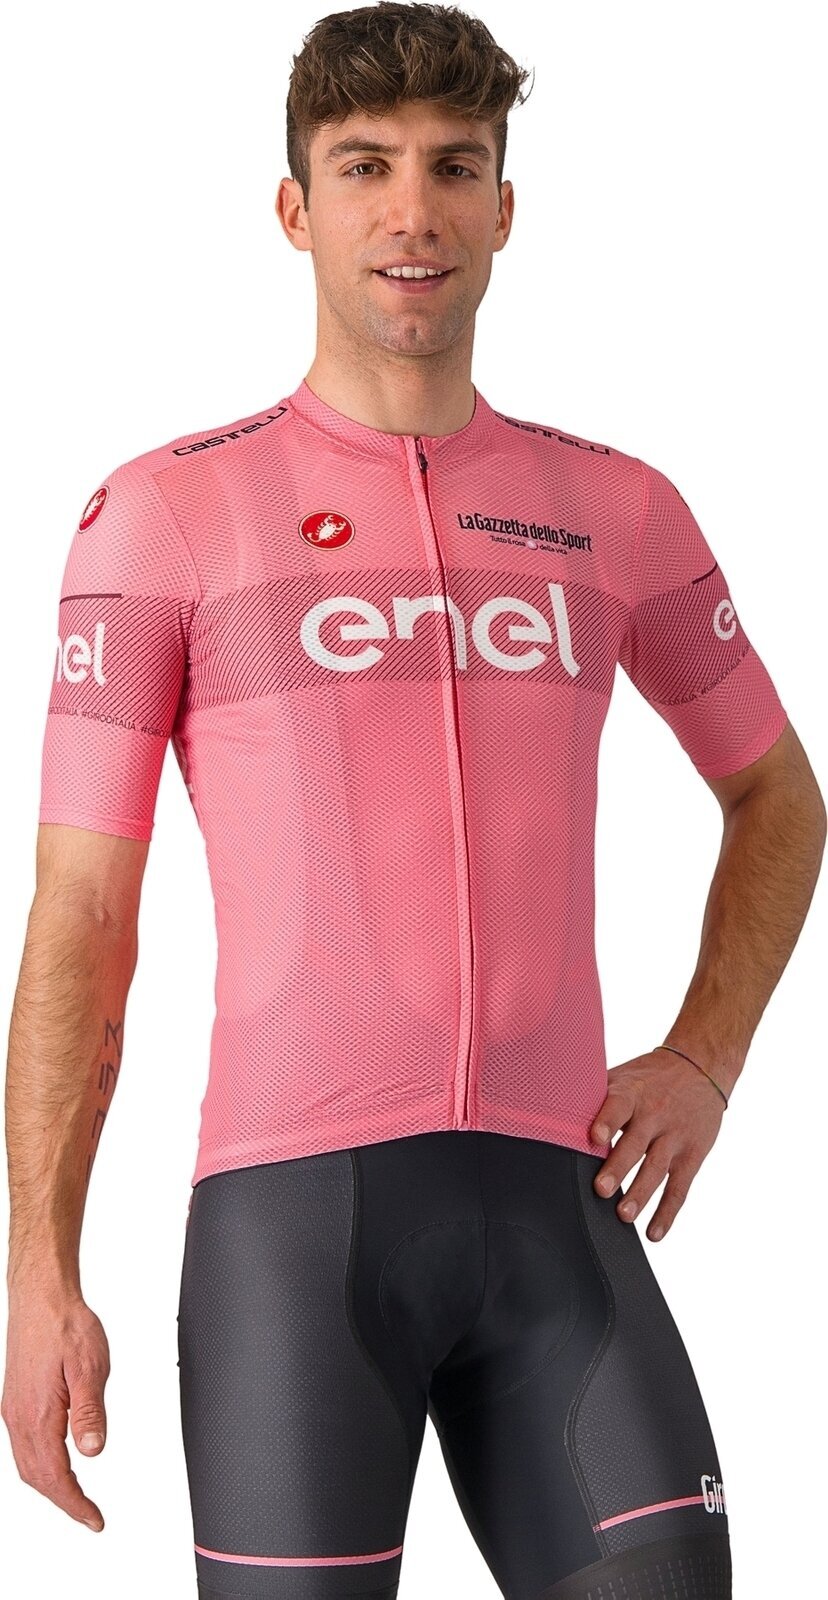 Cycling jersey Castelli Giro107 Classification Jersey Jersey Rosa Giro M